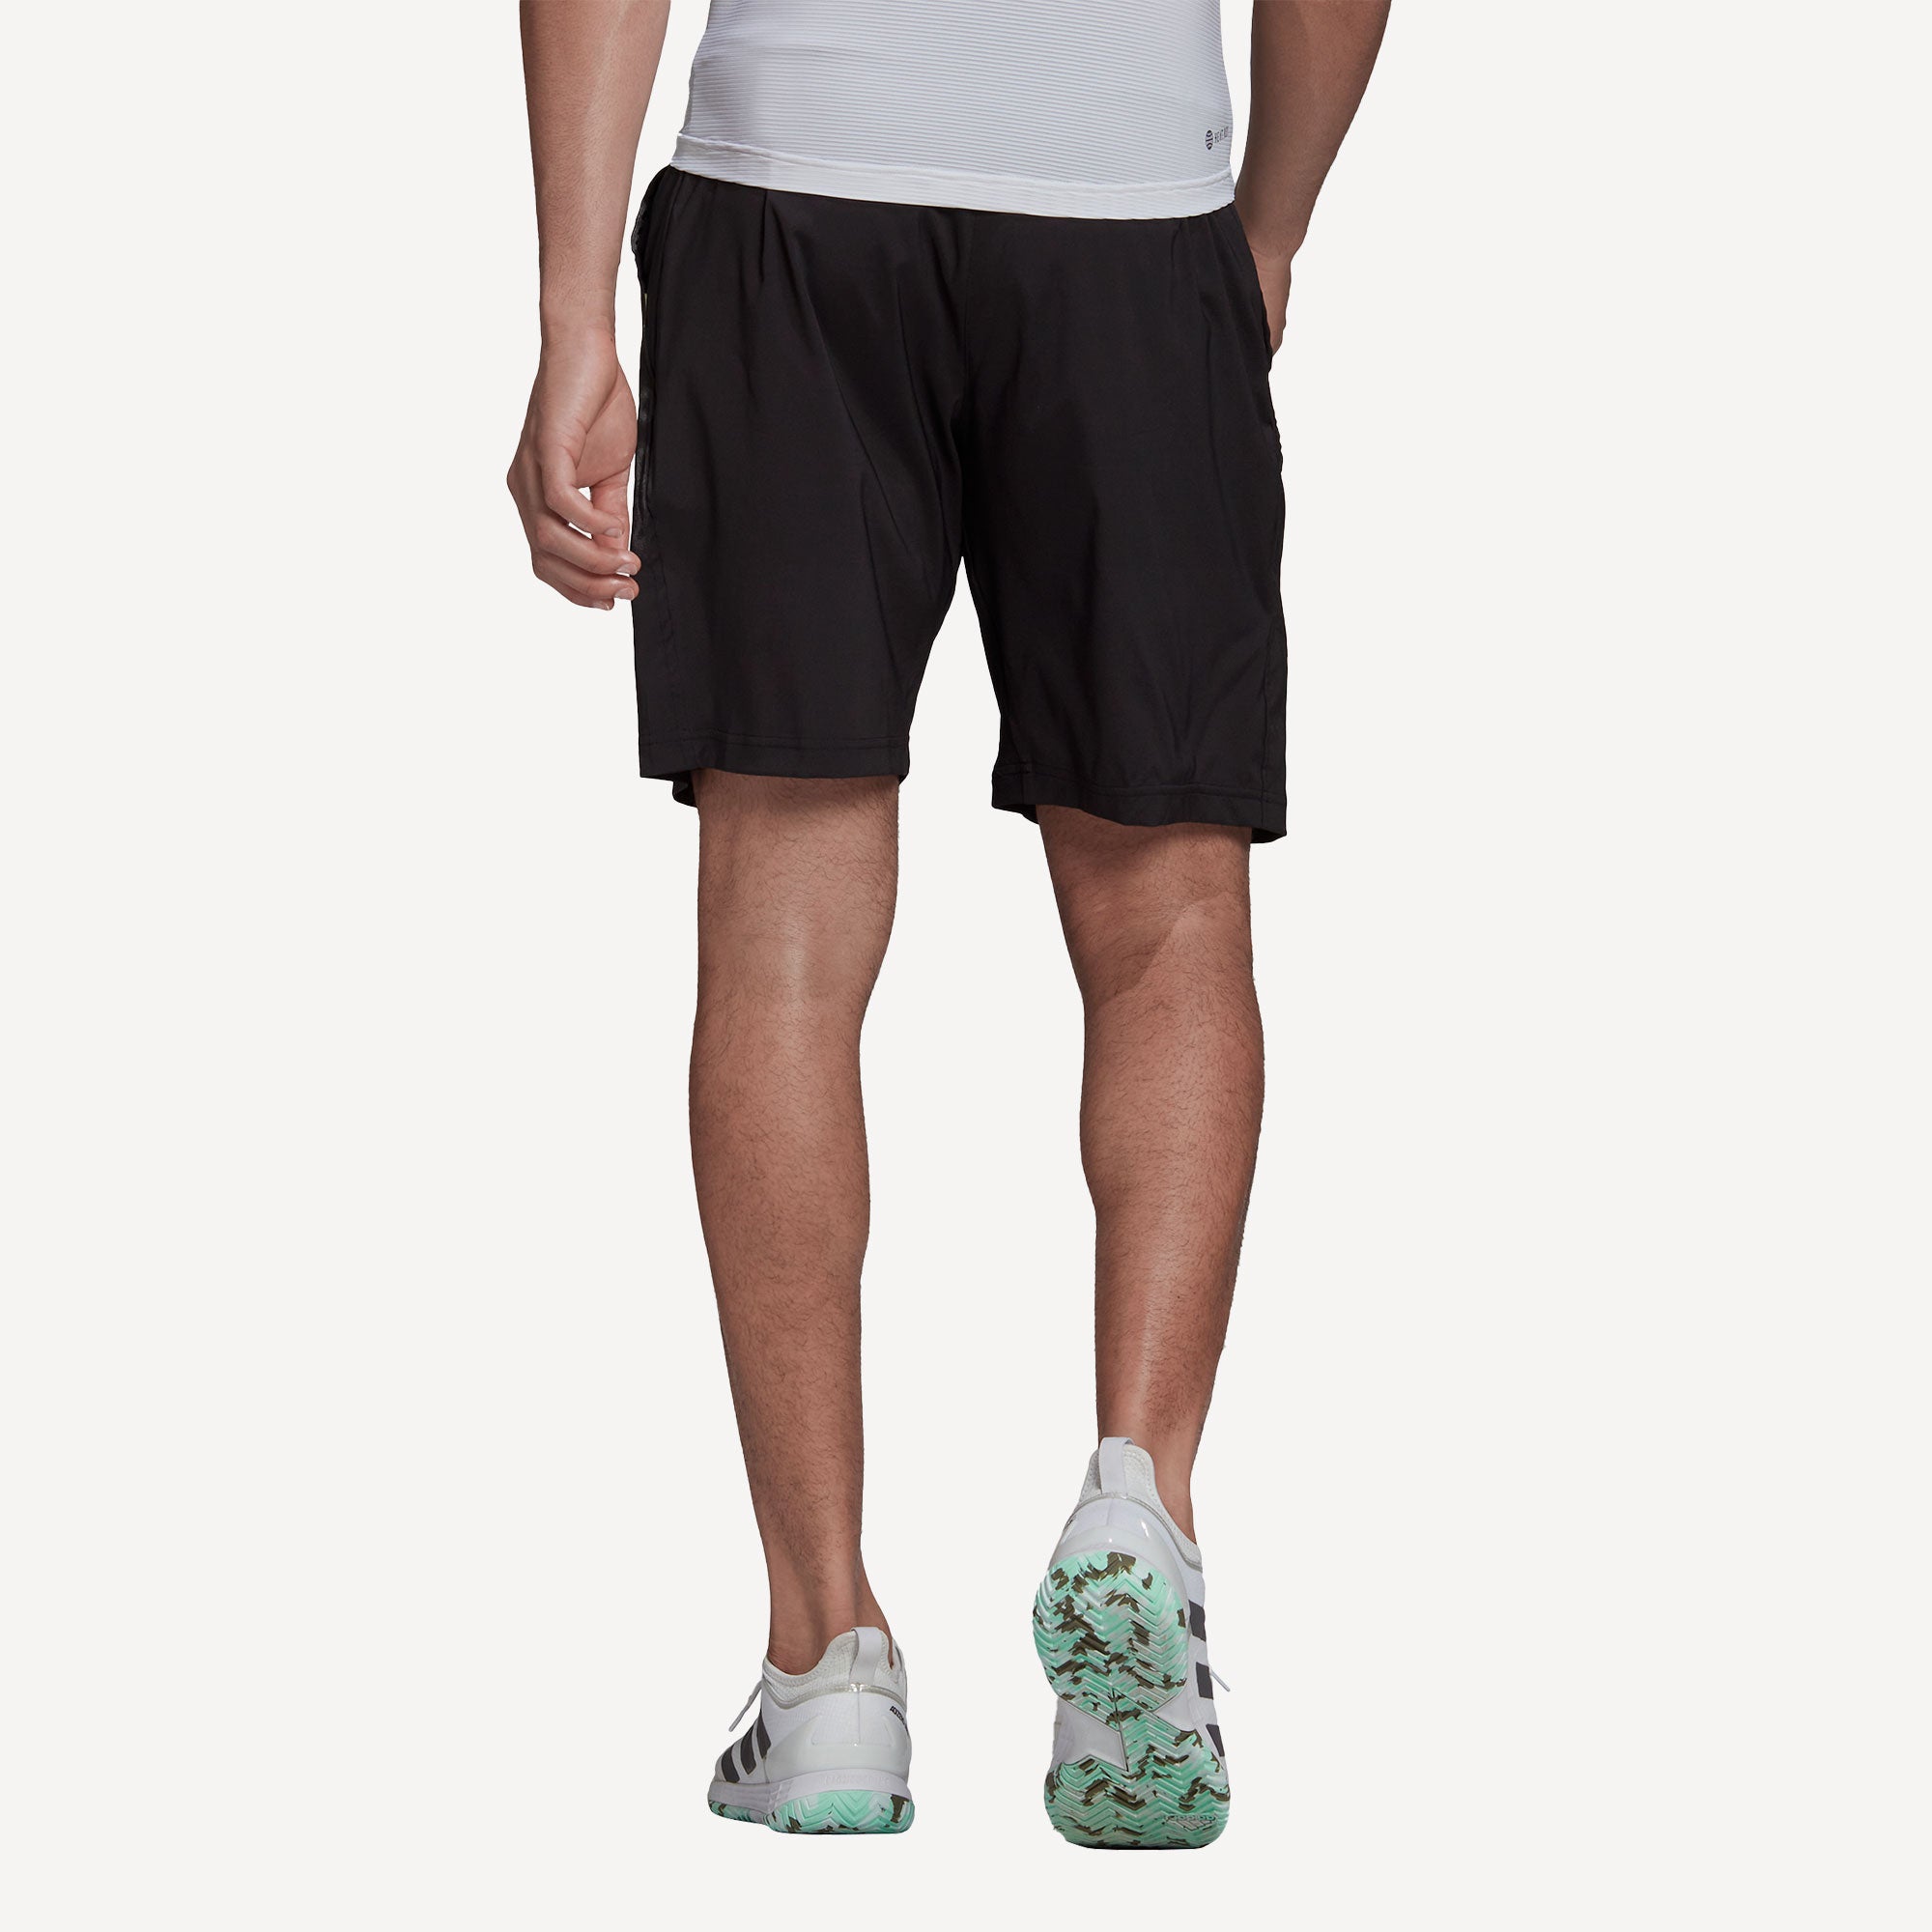 adidas Paris Ergo Men's 9-Inch Tennis Shorts Black (2)